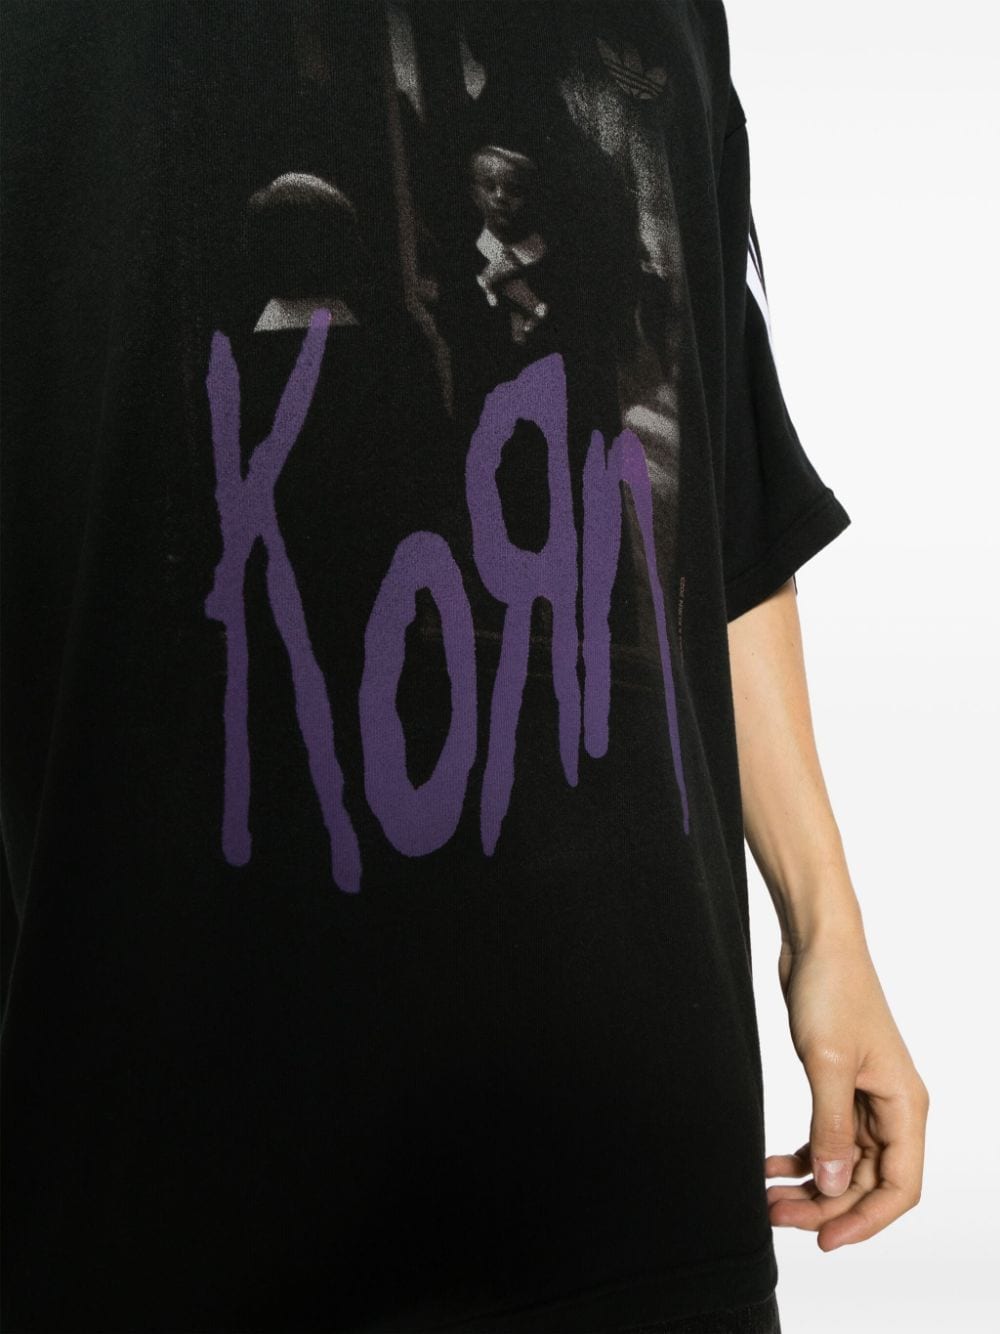 期間限定 x adidas KORN x Korn Size: KoRn Graphic Graphic Men T ...